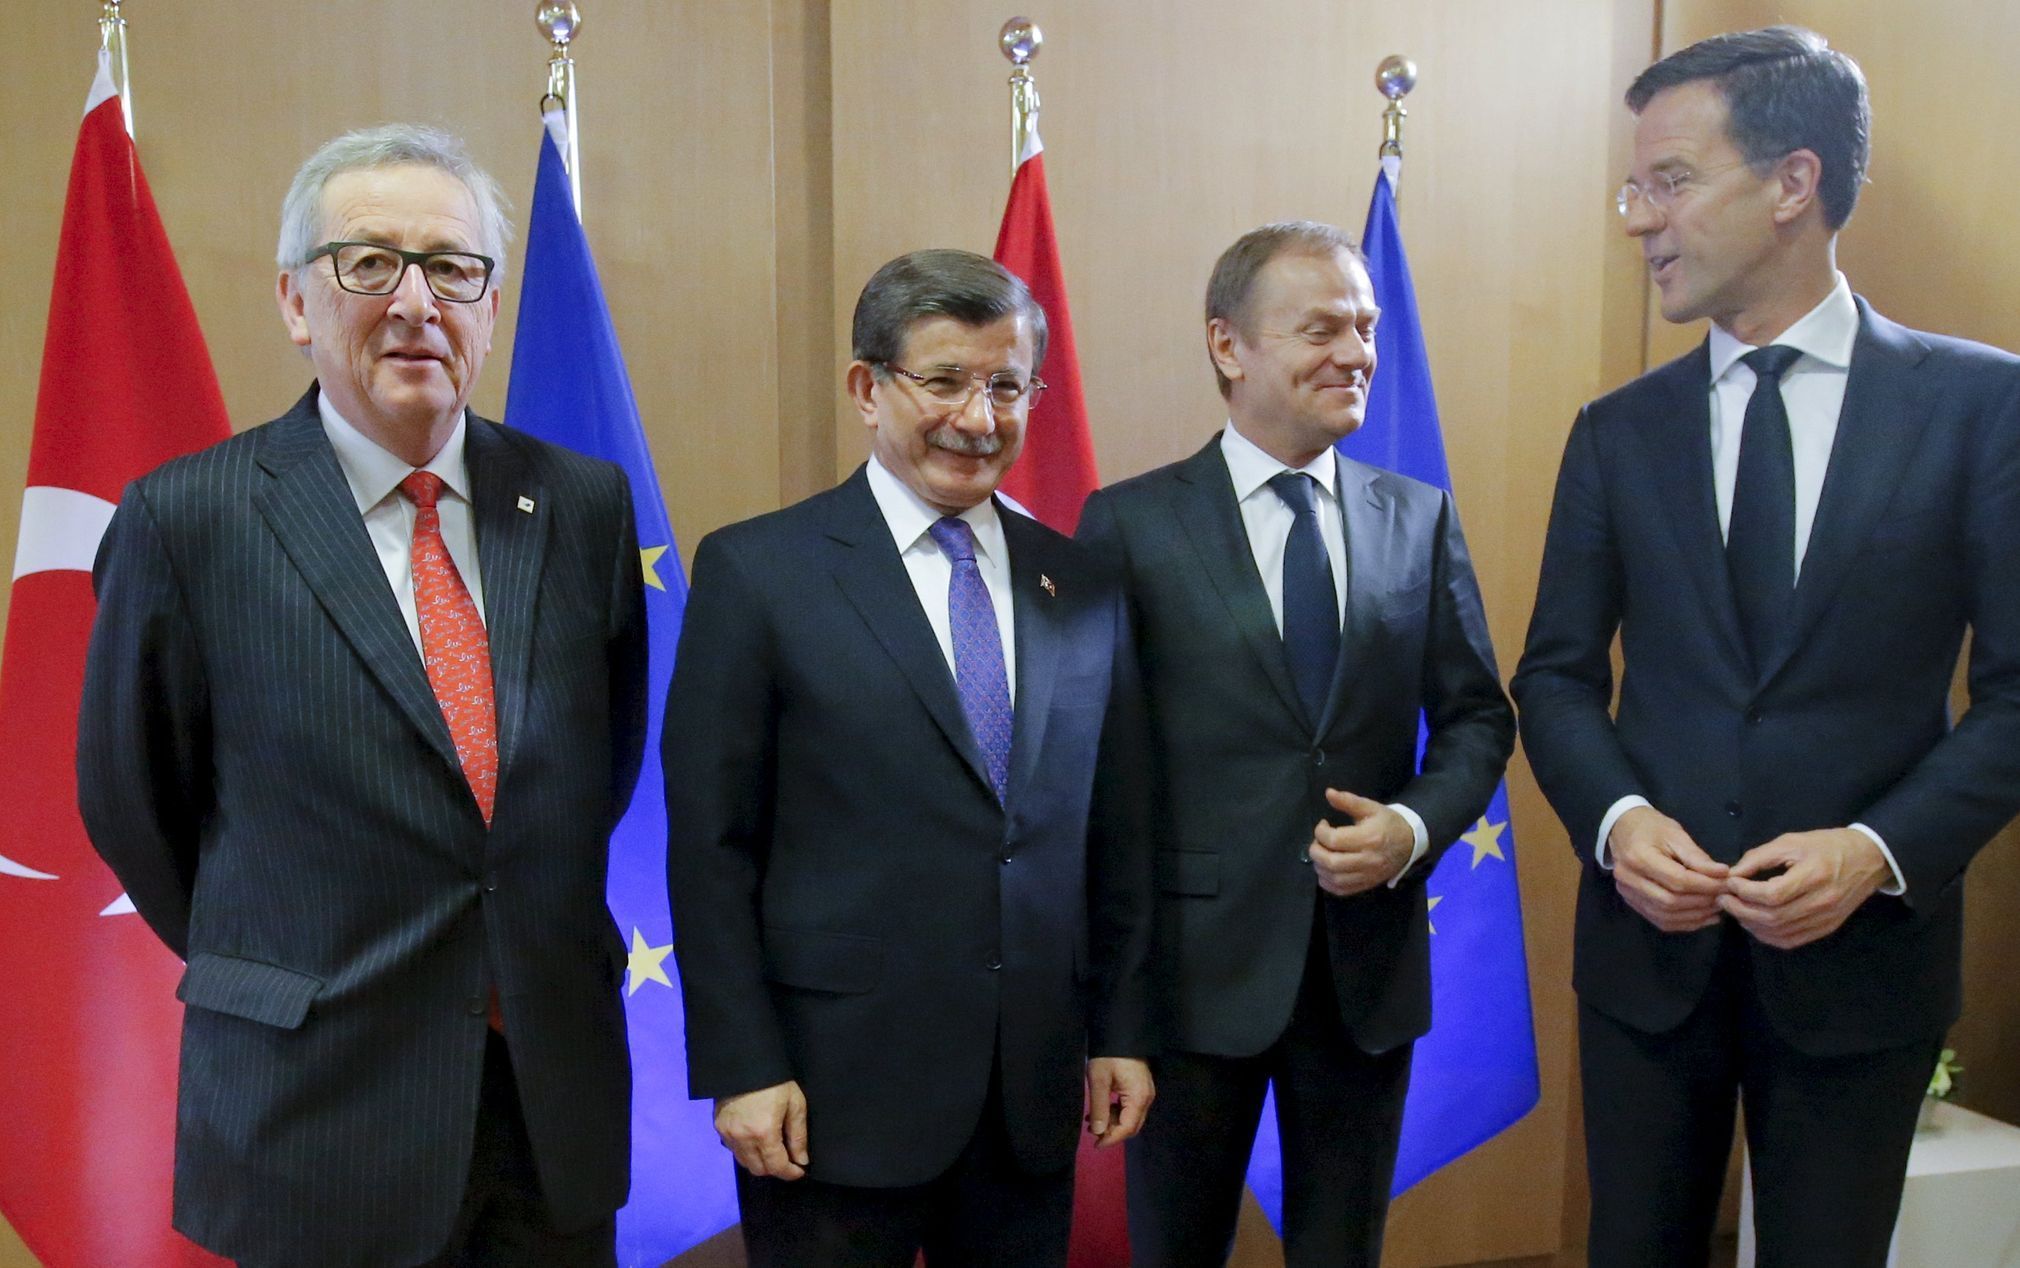 Turecký premiér Davutoglu s prezidentem Evropské komise Junckerem, předsedou Evropské rady Tuskem.